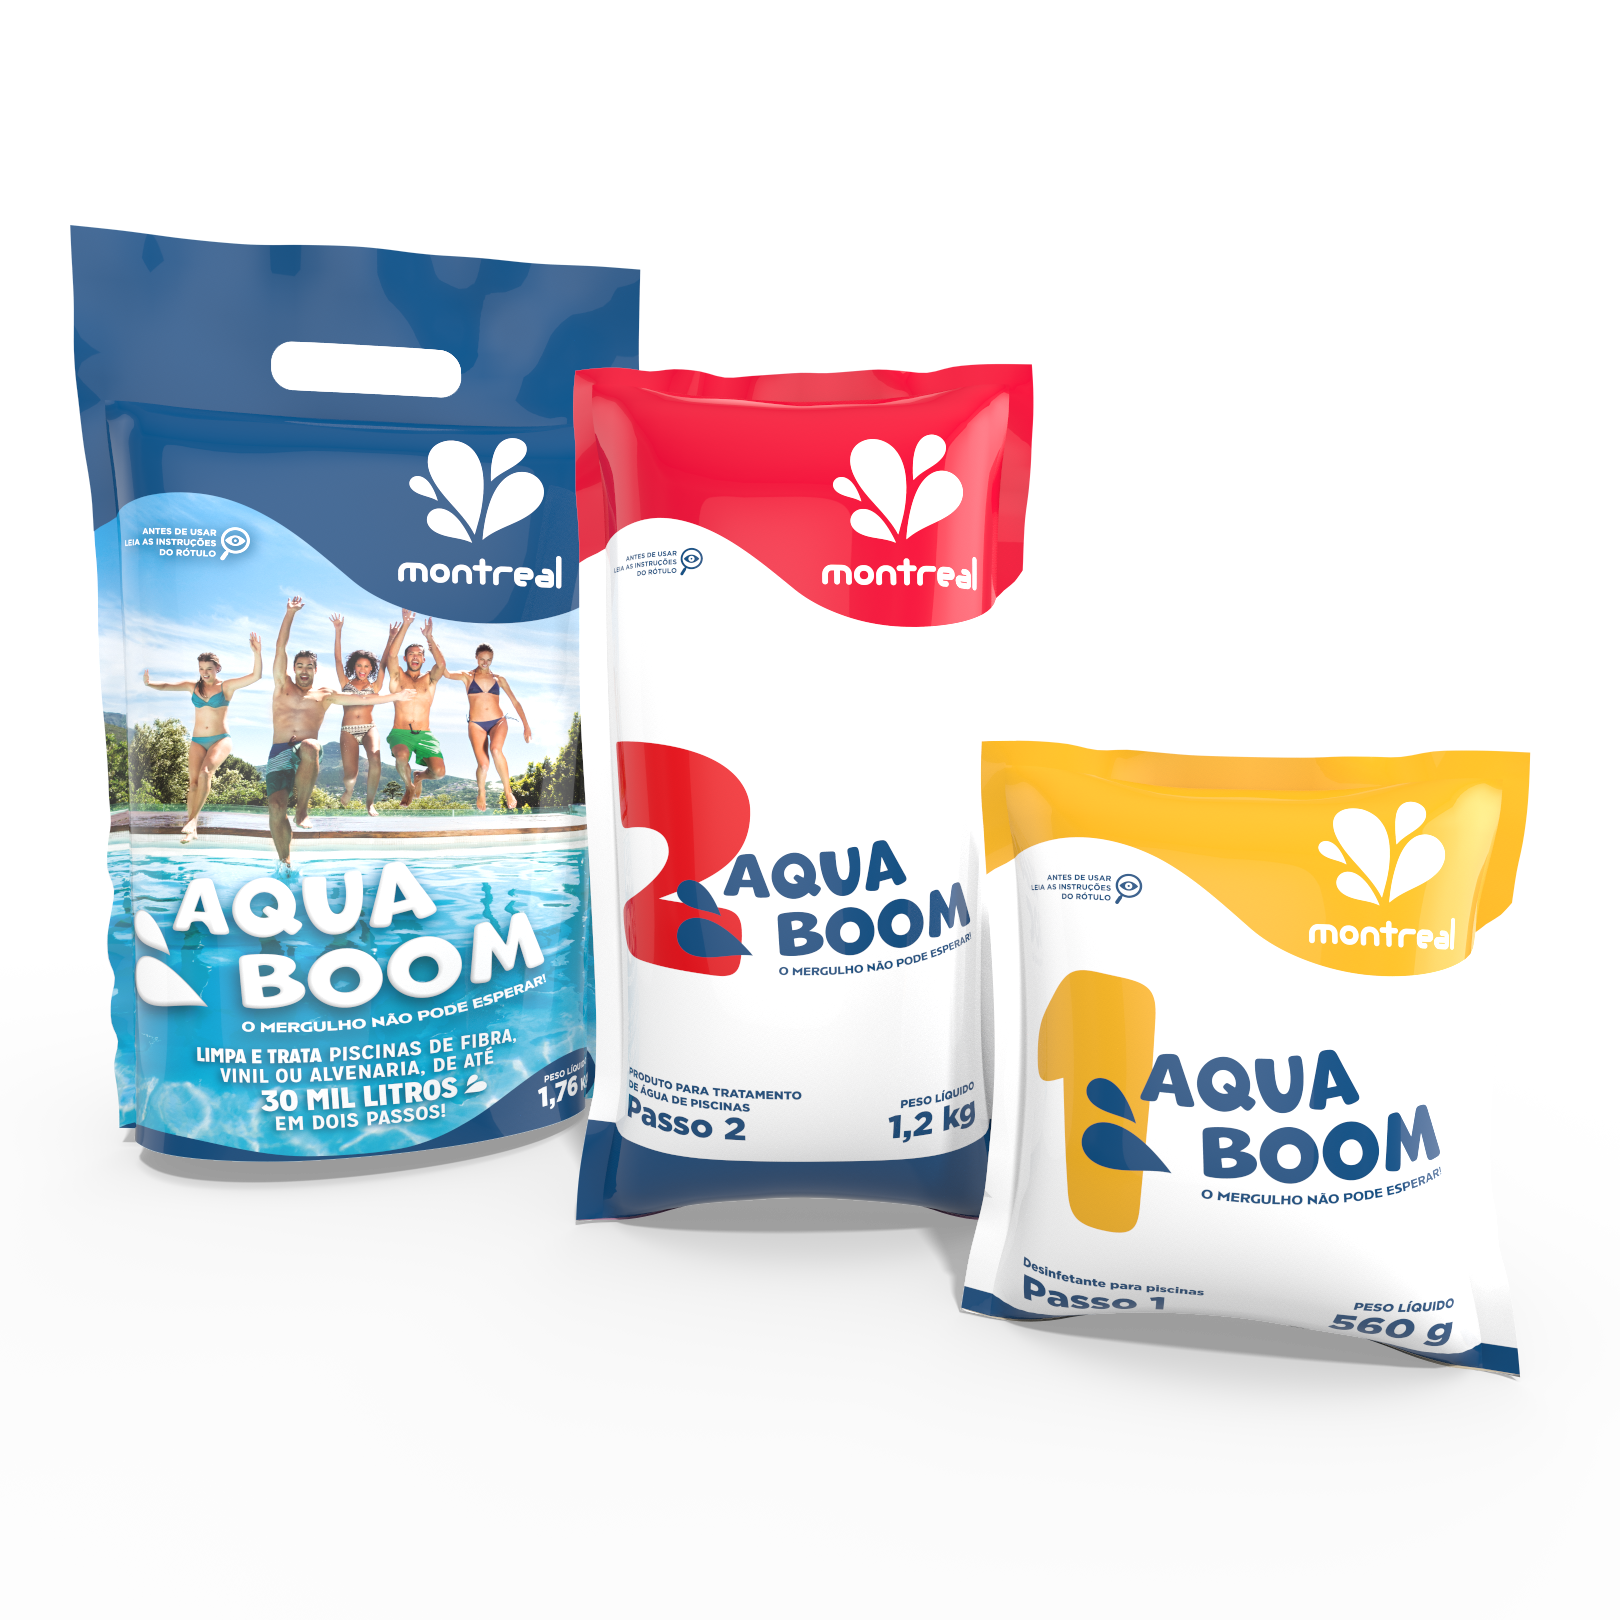 Aqua Boom - Montreal